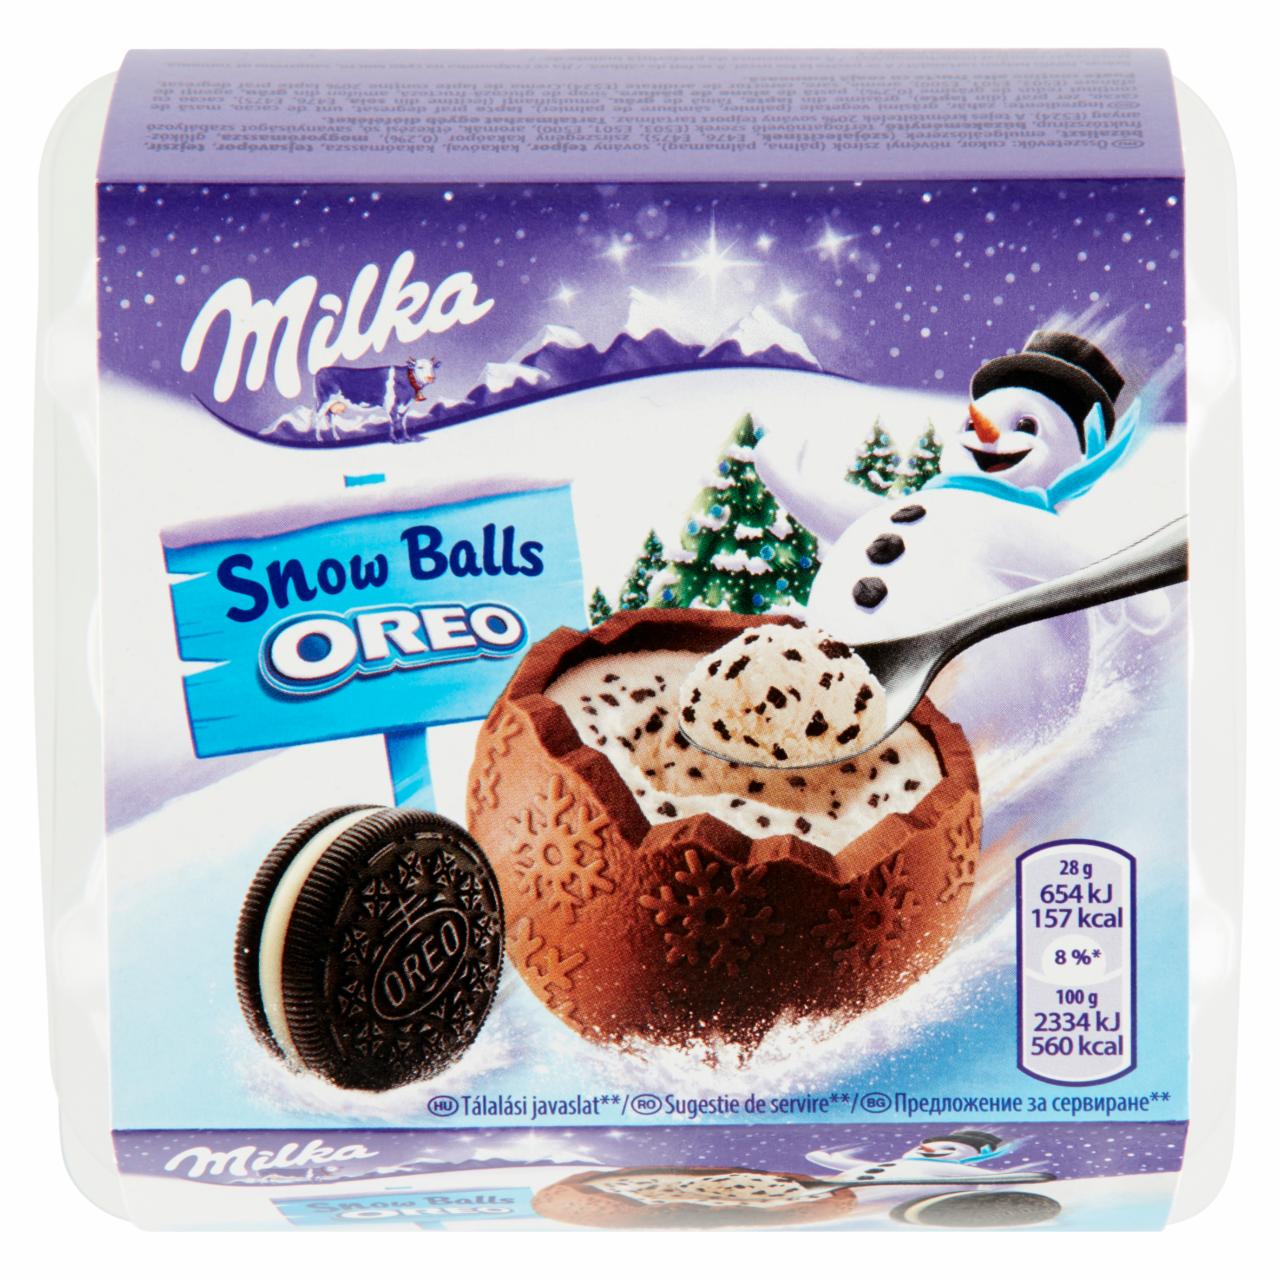 Képek - Milka Snow Ball Oreo alpesi tejcsokoládé kakaós kekszdarabkákkal 4 x 28 g (112 g)